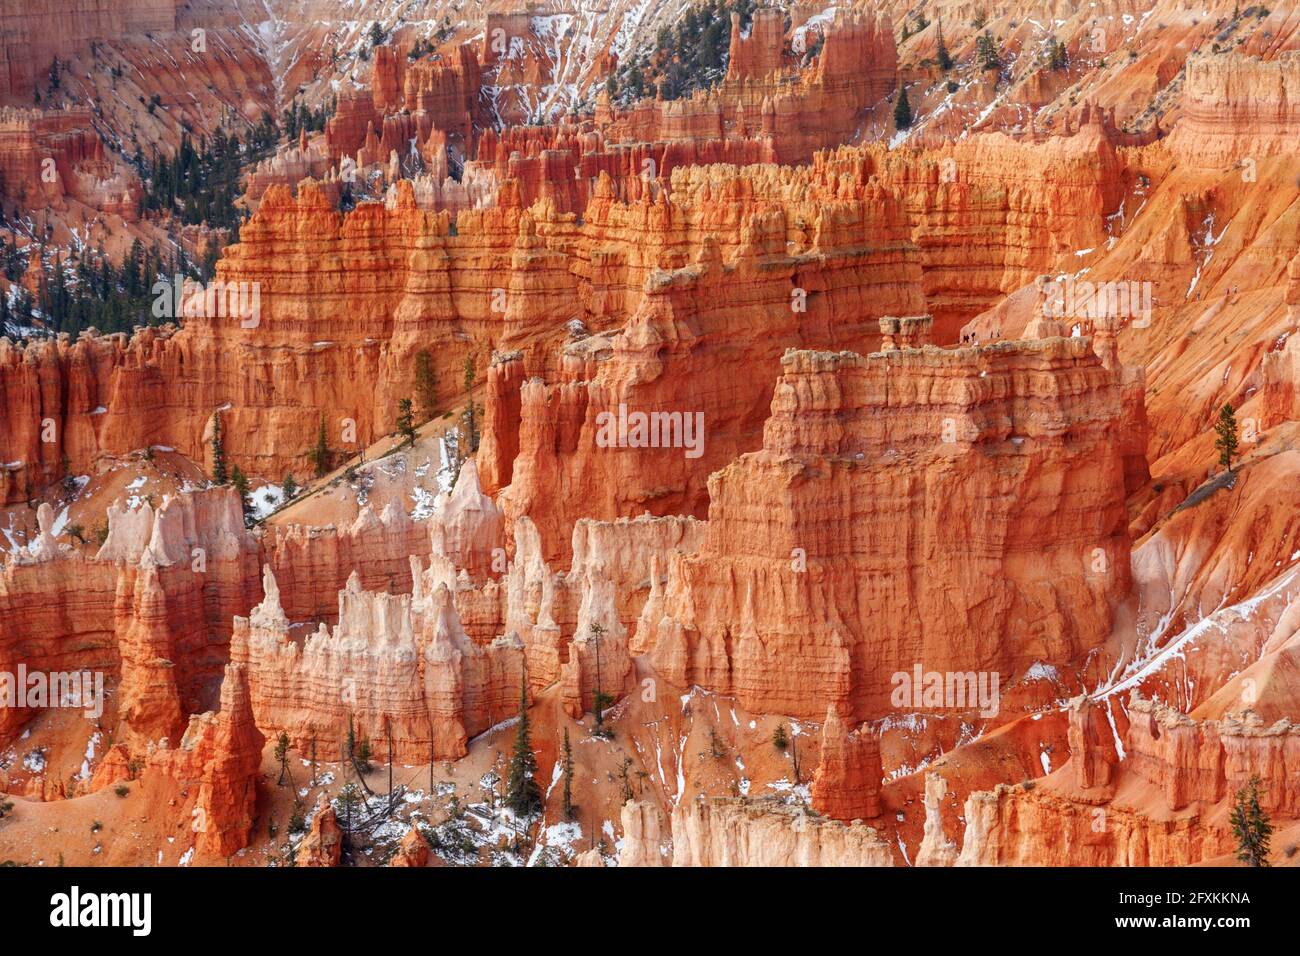 Hoodoos of Bryce Canyon National Park, Utah, USA Stock Photo